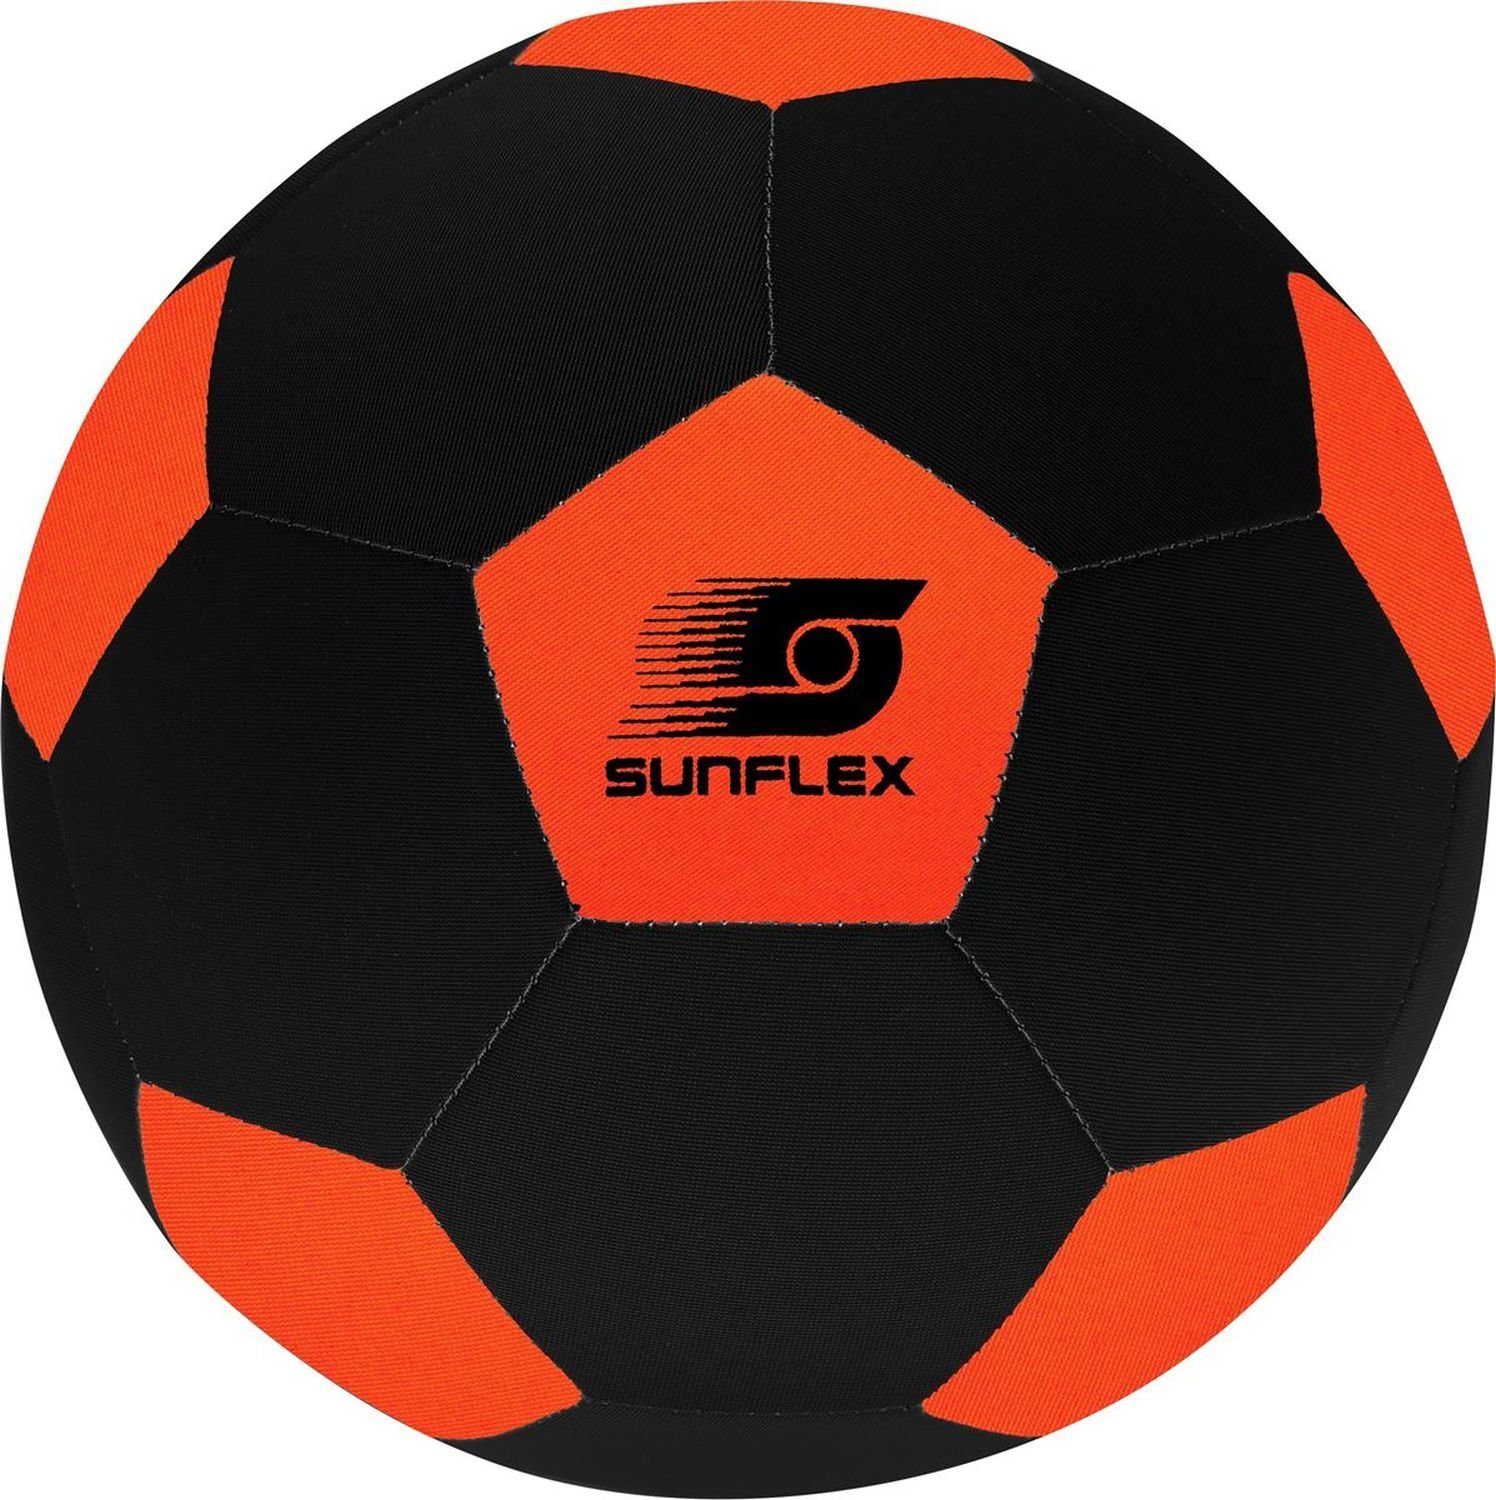 Sunflex Fußball Neopren Fußball, Größe 5 Orange